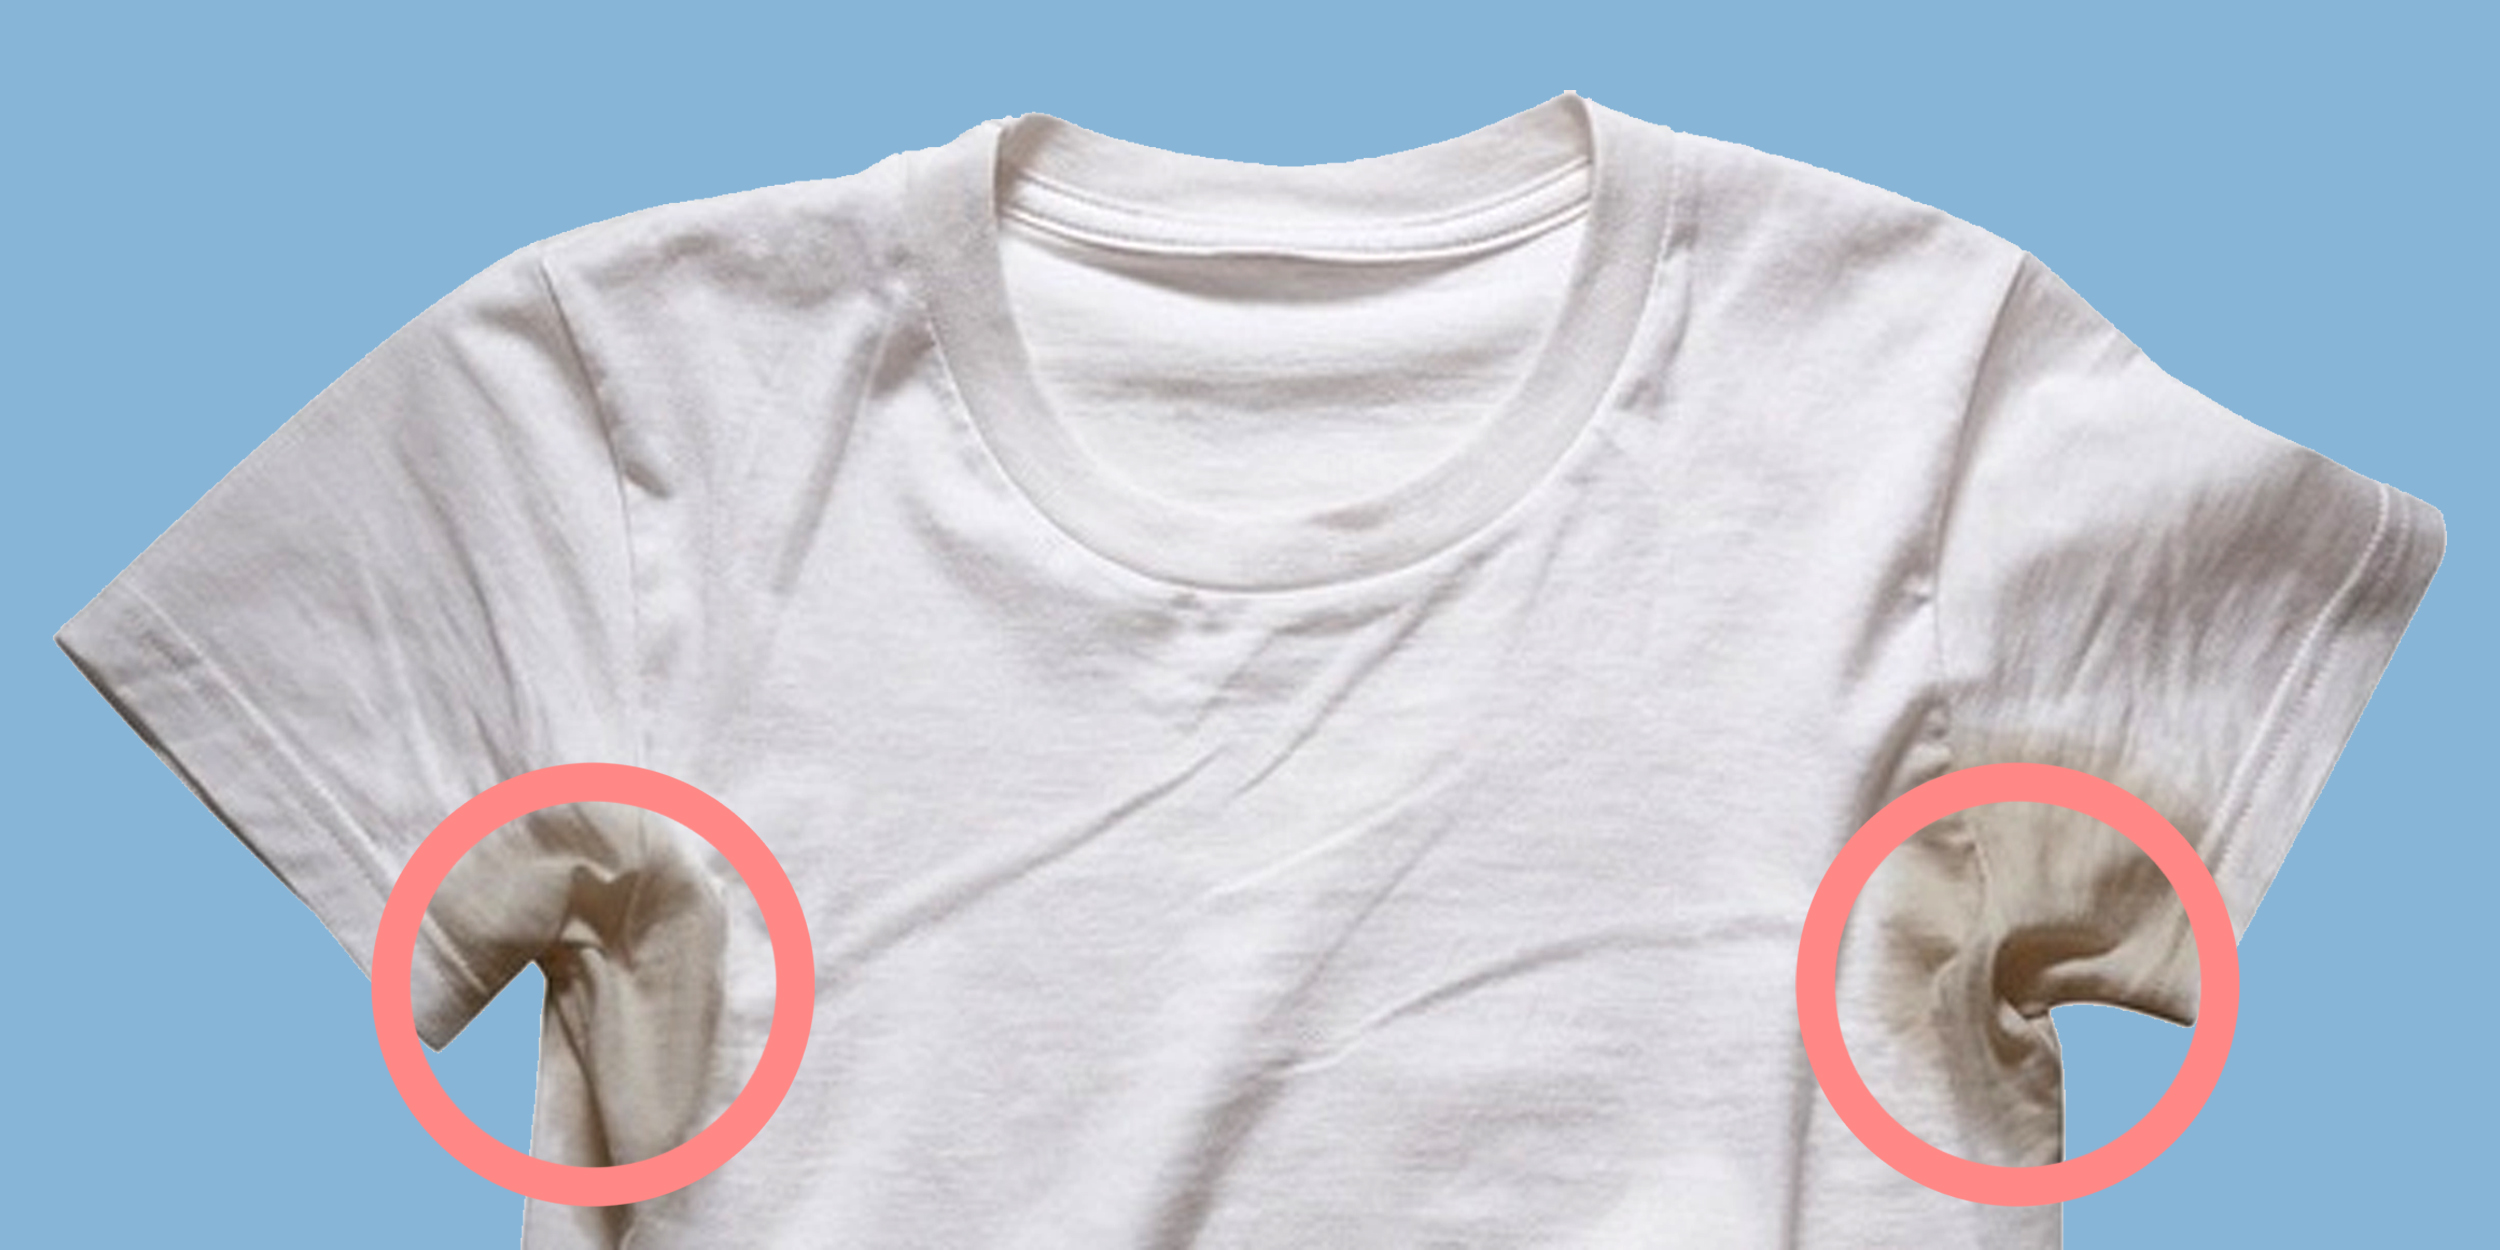 Как отстирать даже застарелые пятна от пота на белой одежде